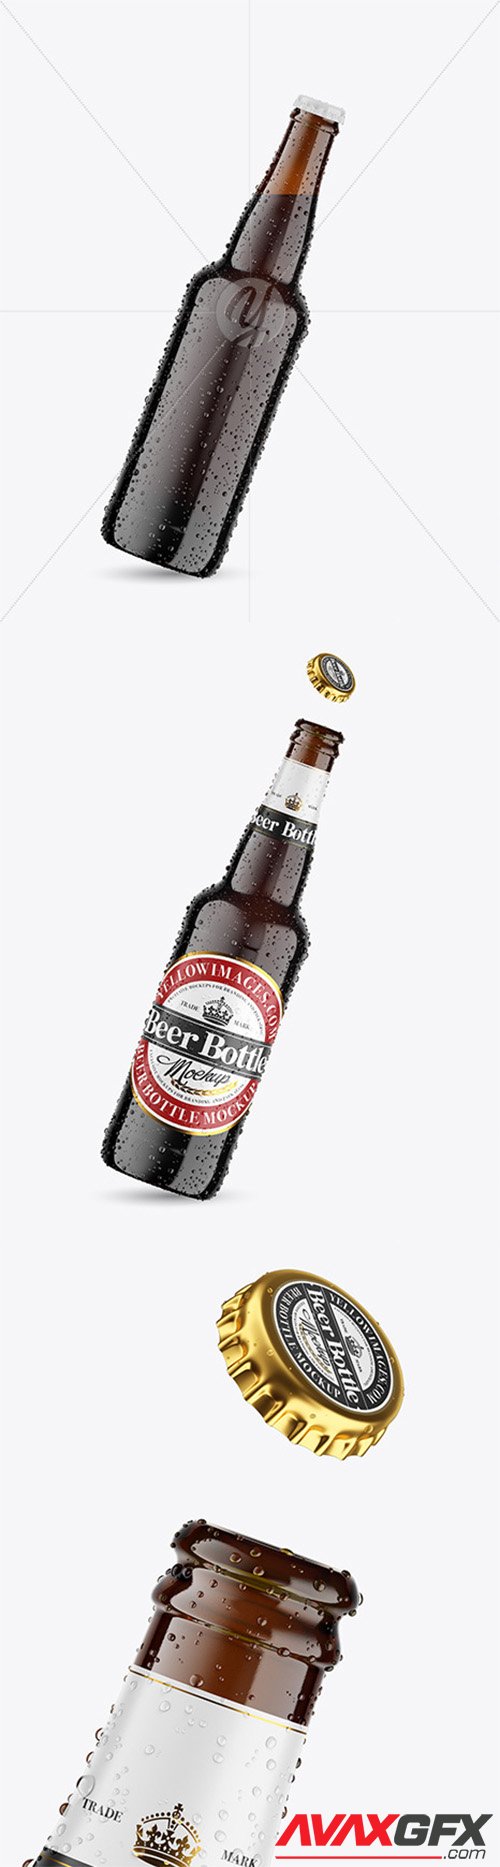 Amber Glass Dark Beer Bottle w/ Condensation Mockup 78723 TIF